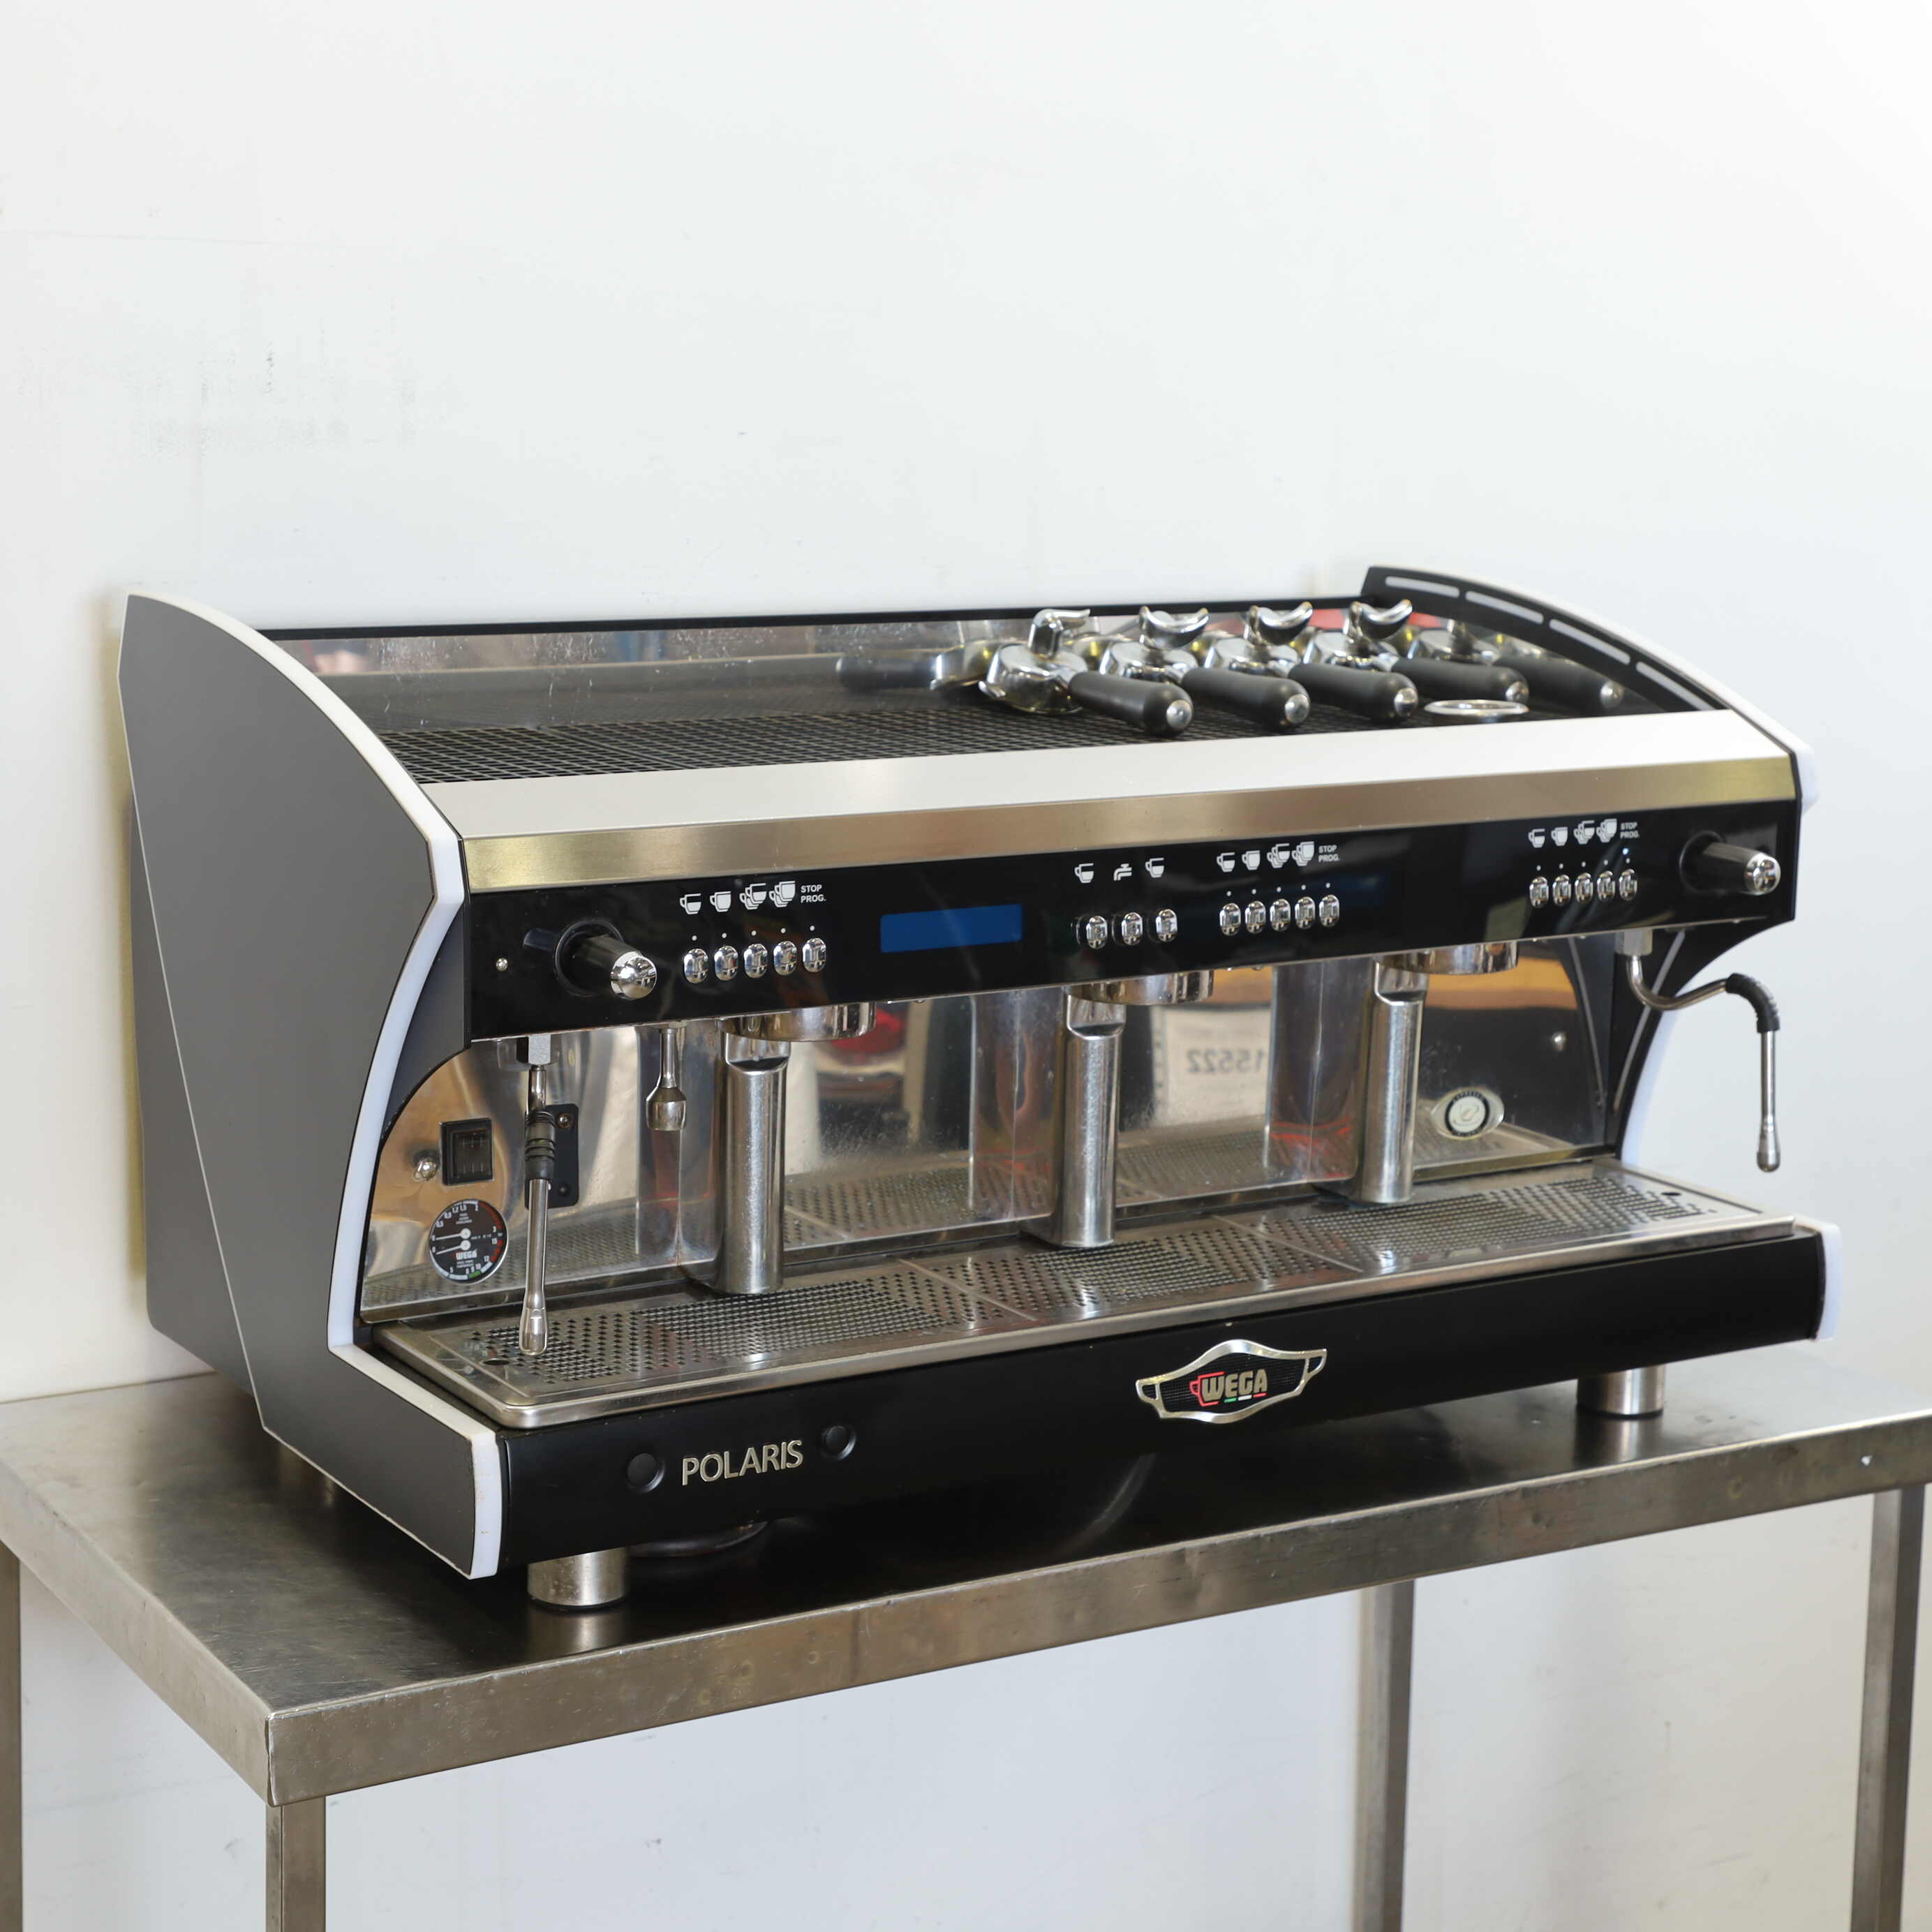 Thumbnail - Wega Polaris EVD3 3 Group Coffee Machine